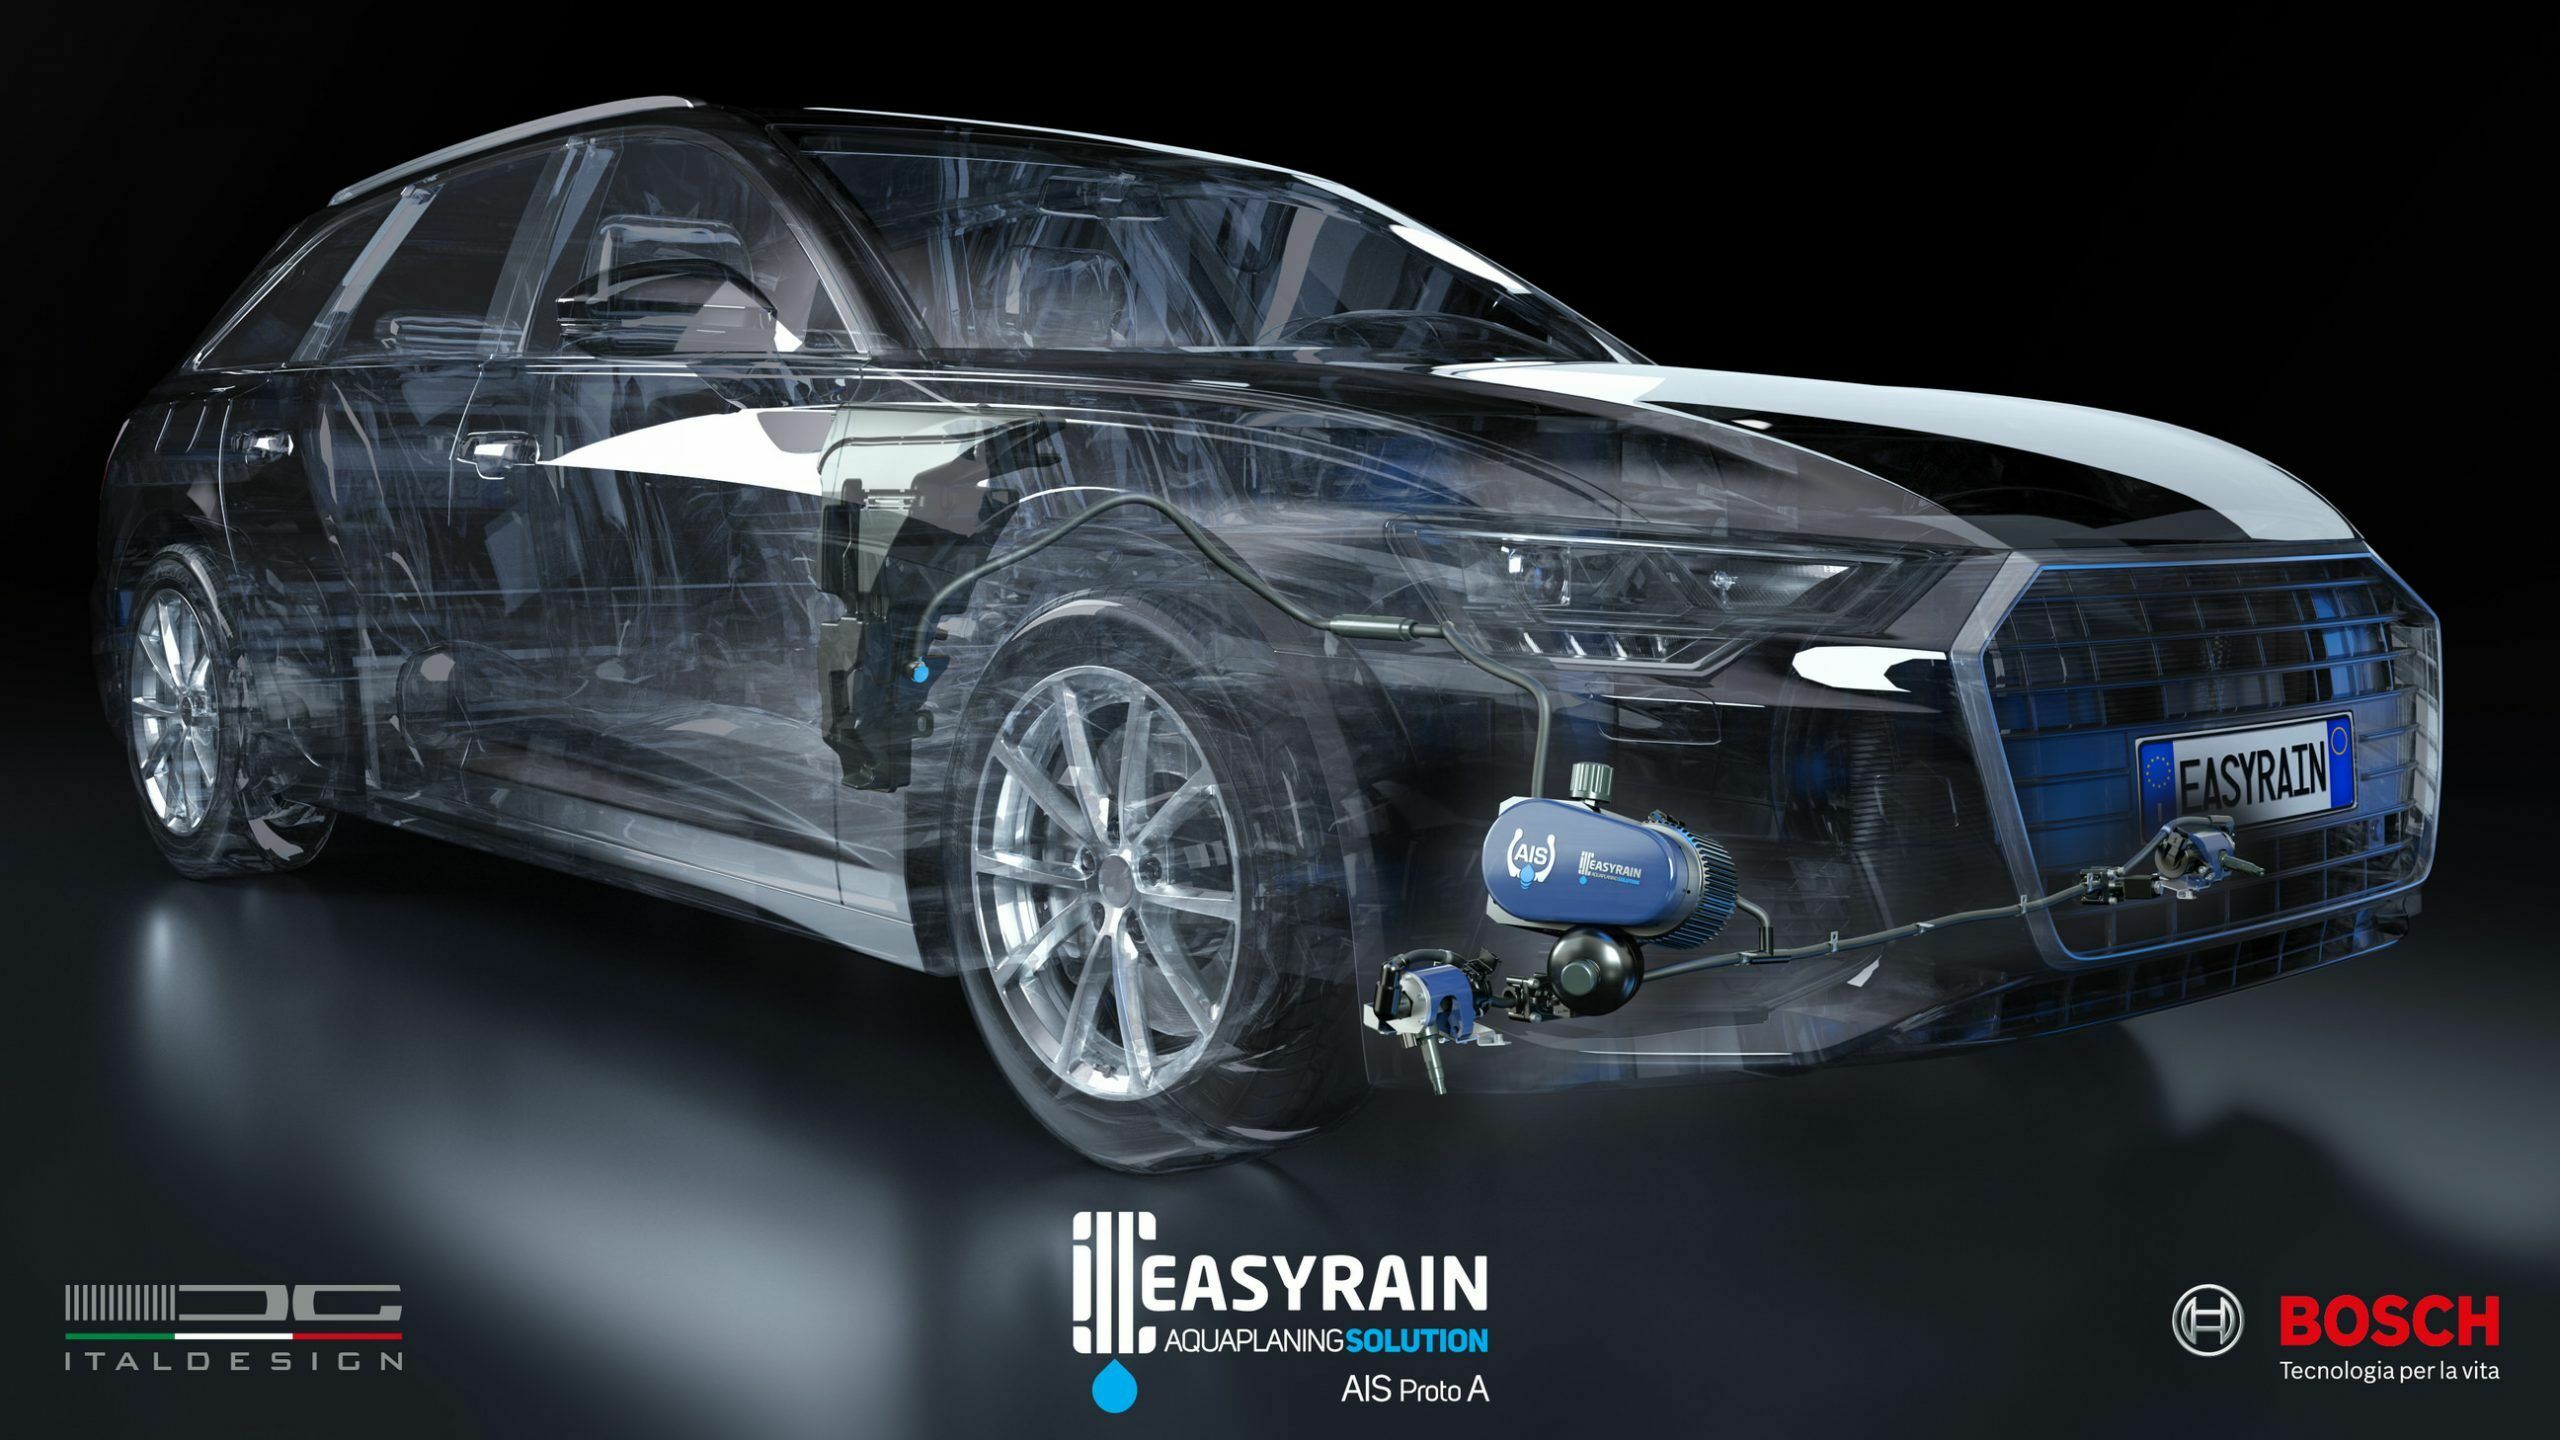 AIS: Easyrain, Bosch und Italdesign erproben Anti-Aquaplaning-System an Serienfahrzeug